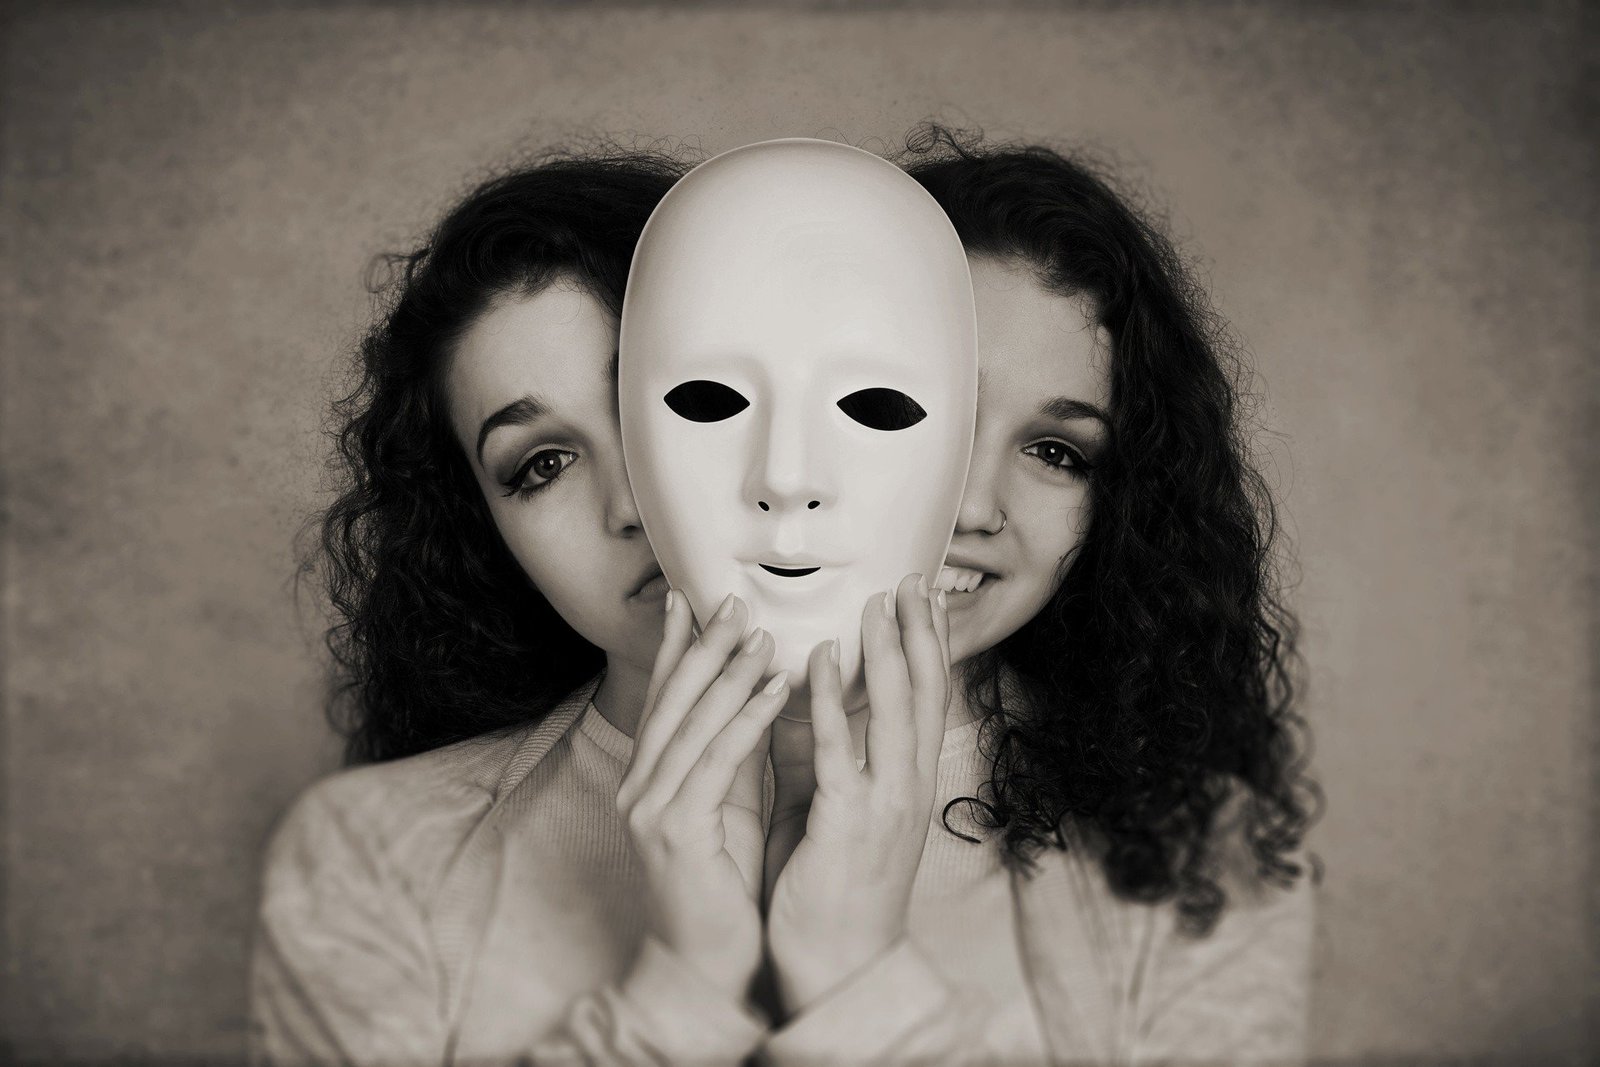 Mulher segurando uma máscara enquanto ao fundo ela tem uma expressão triste e feliz